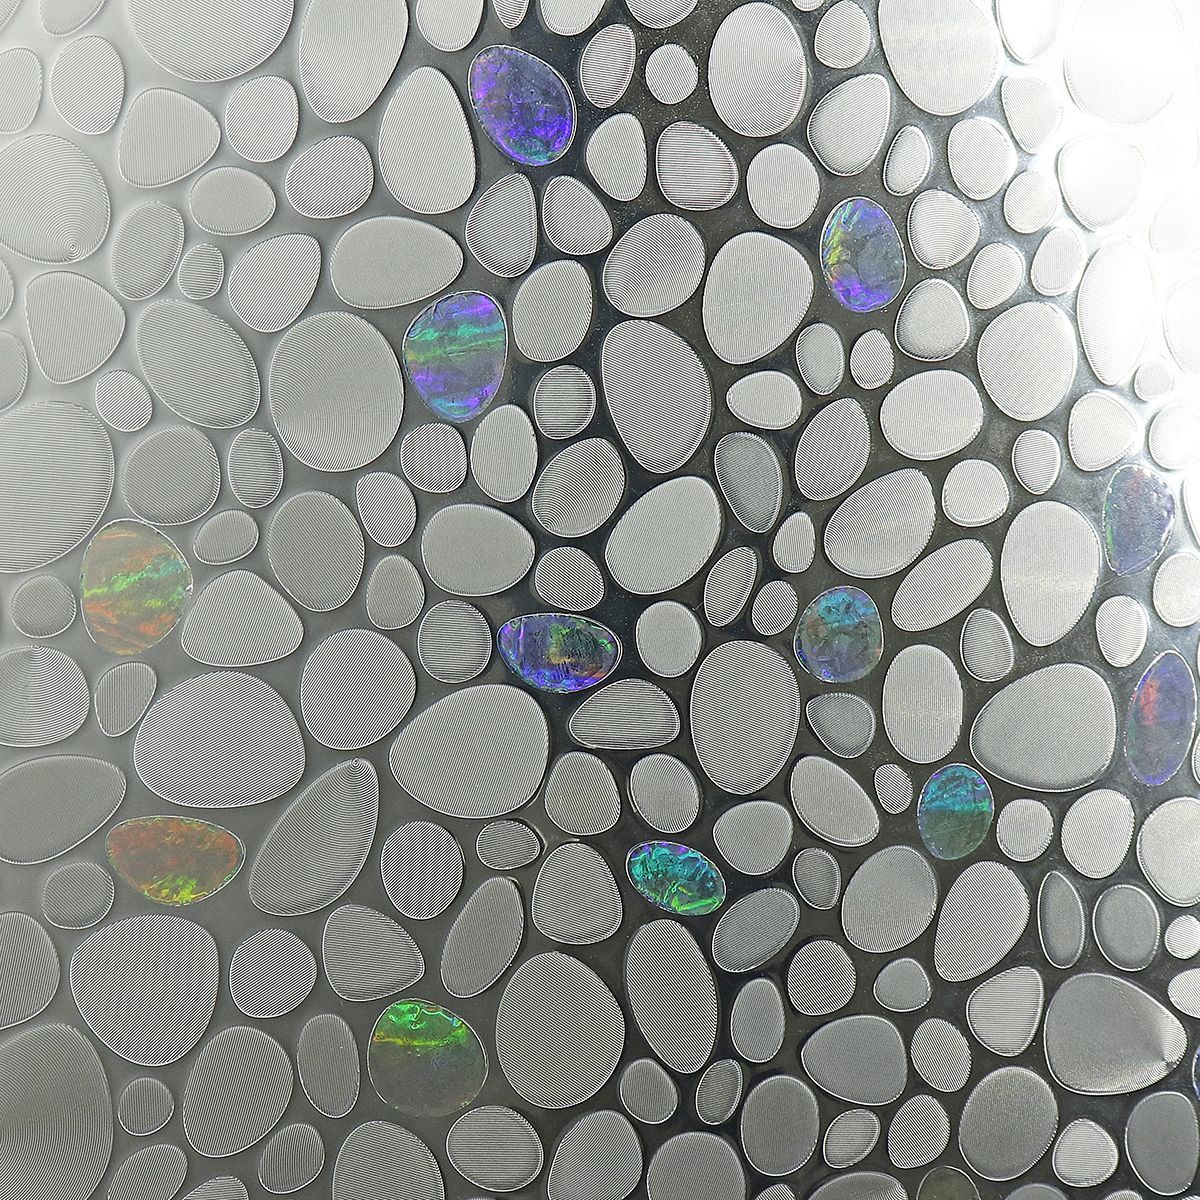 3D-Cobblestones-Static-Decorative-Window-Film-Privacy-Non-Adhesive-45x200cm-1630534